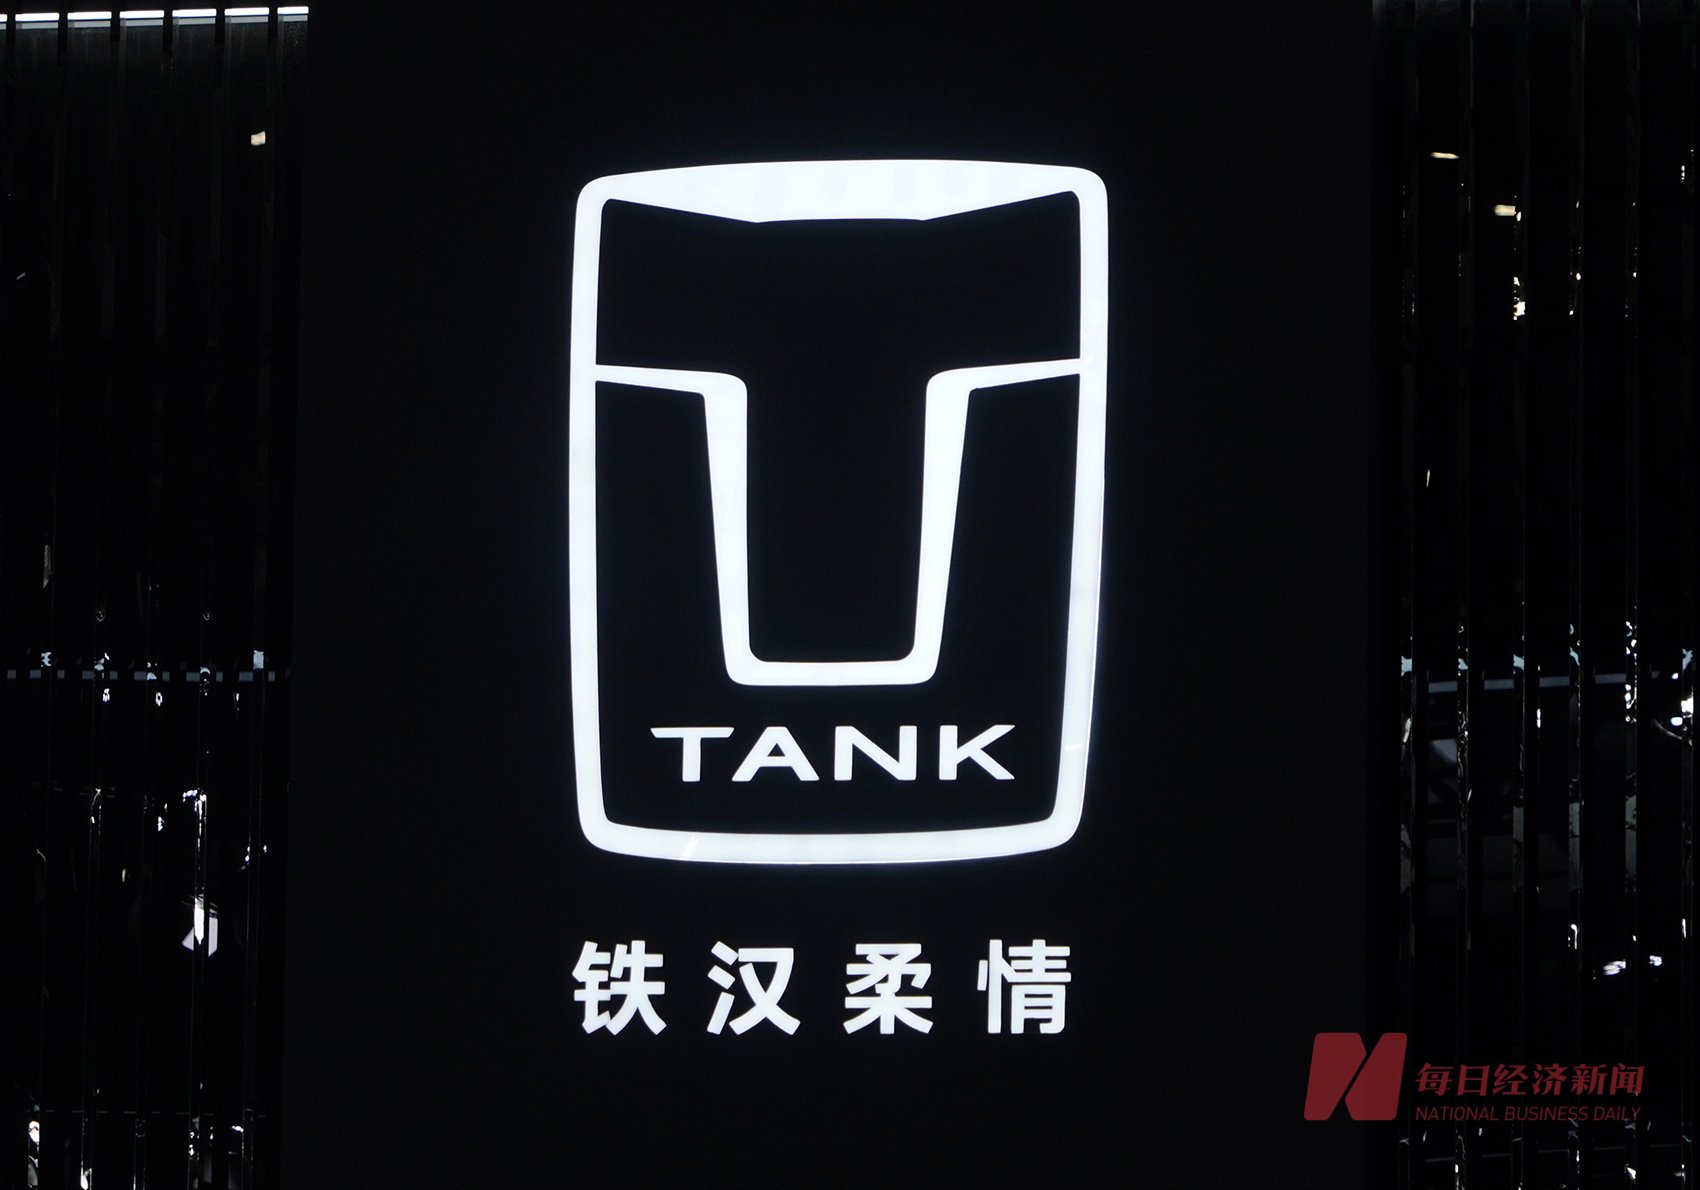 长城汽车坦克品牌三大工厂即将停产 已引起部分“准车主”恐慌-第2张图片-静柔生活网